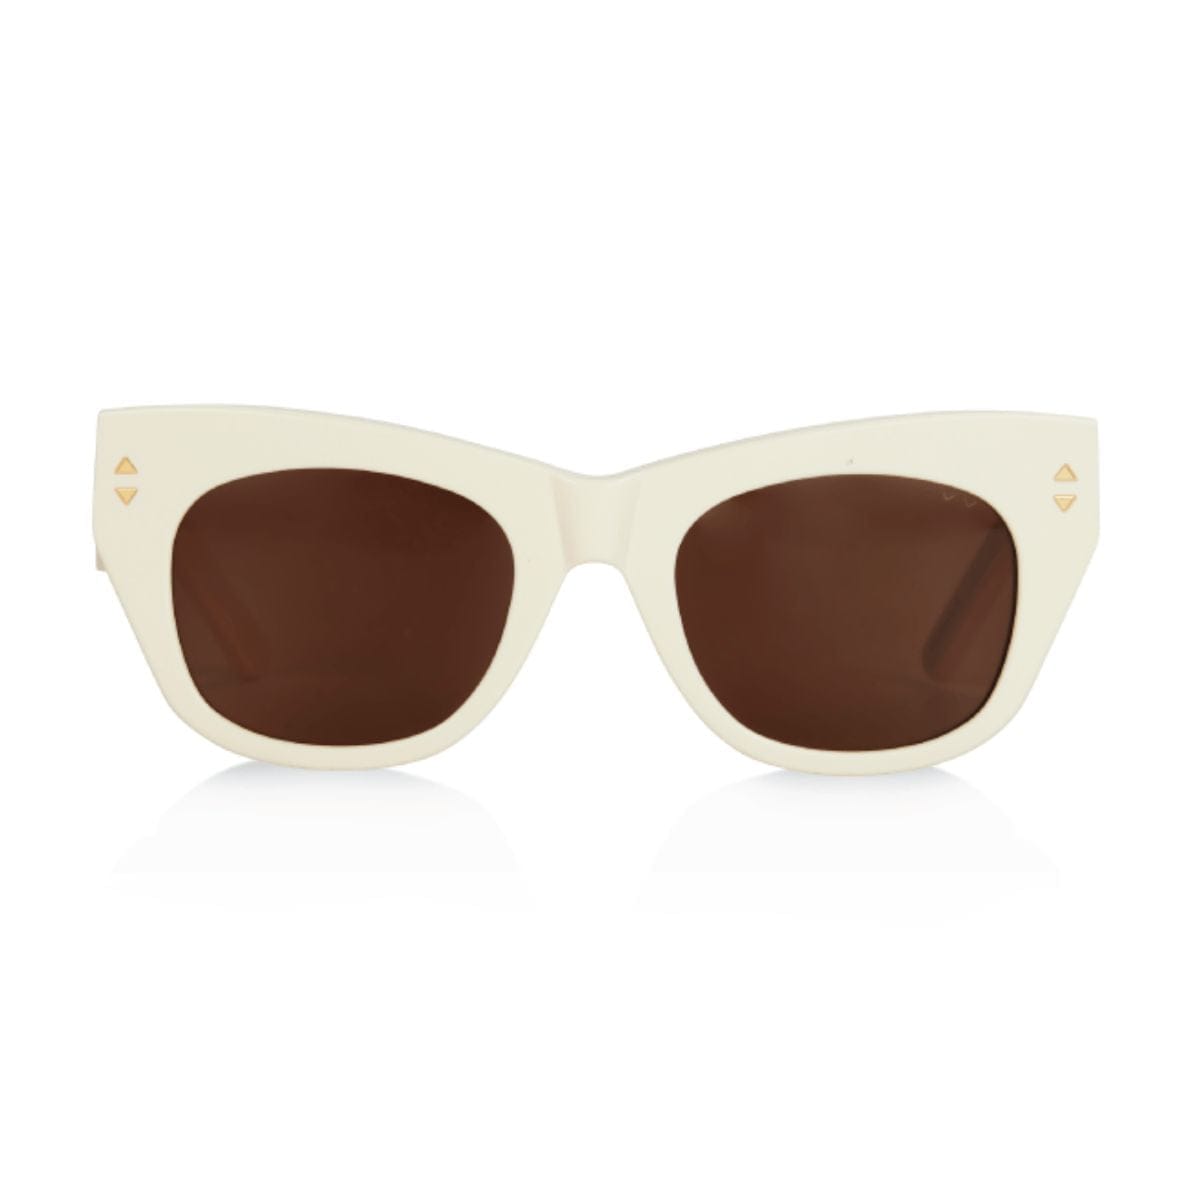 Queen & Moncur Sunglasses (Cream/Brown)